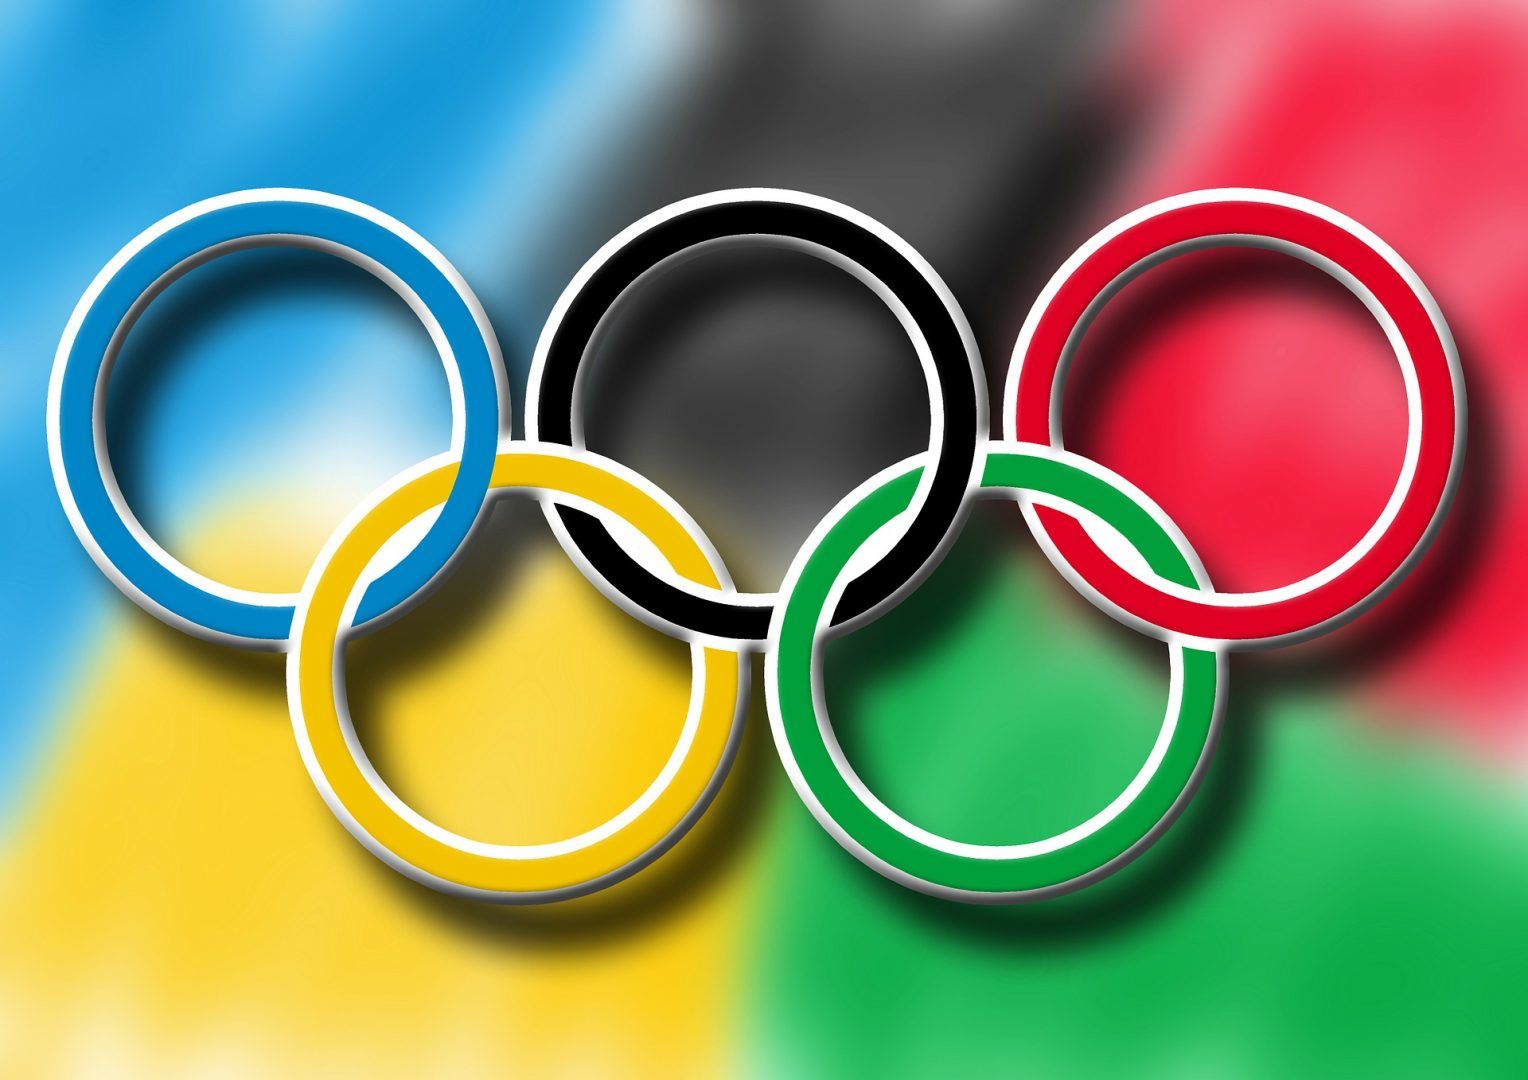 Az Olimpia szimbóluma az öt karika.